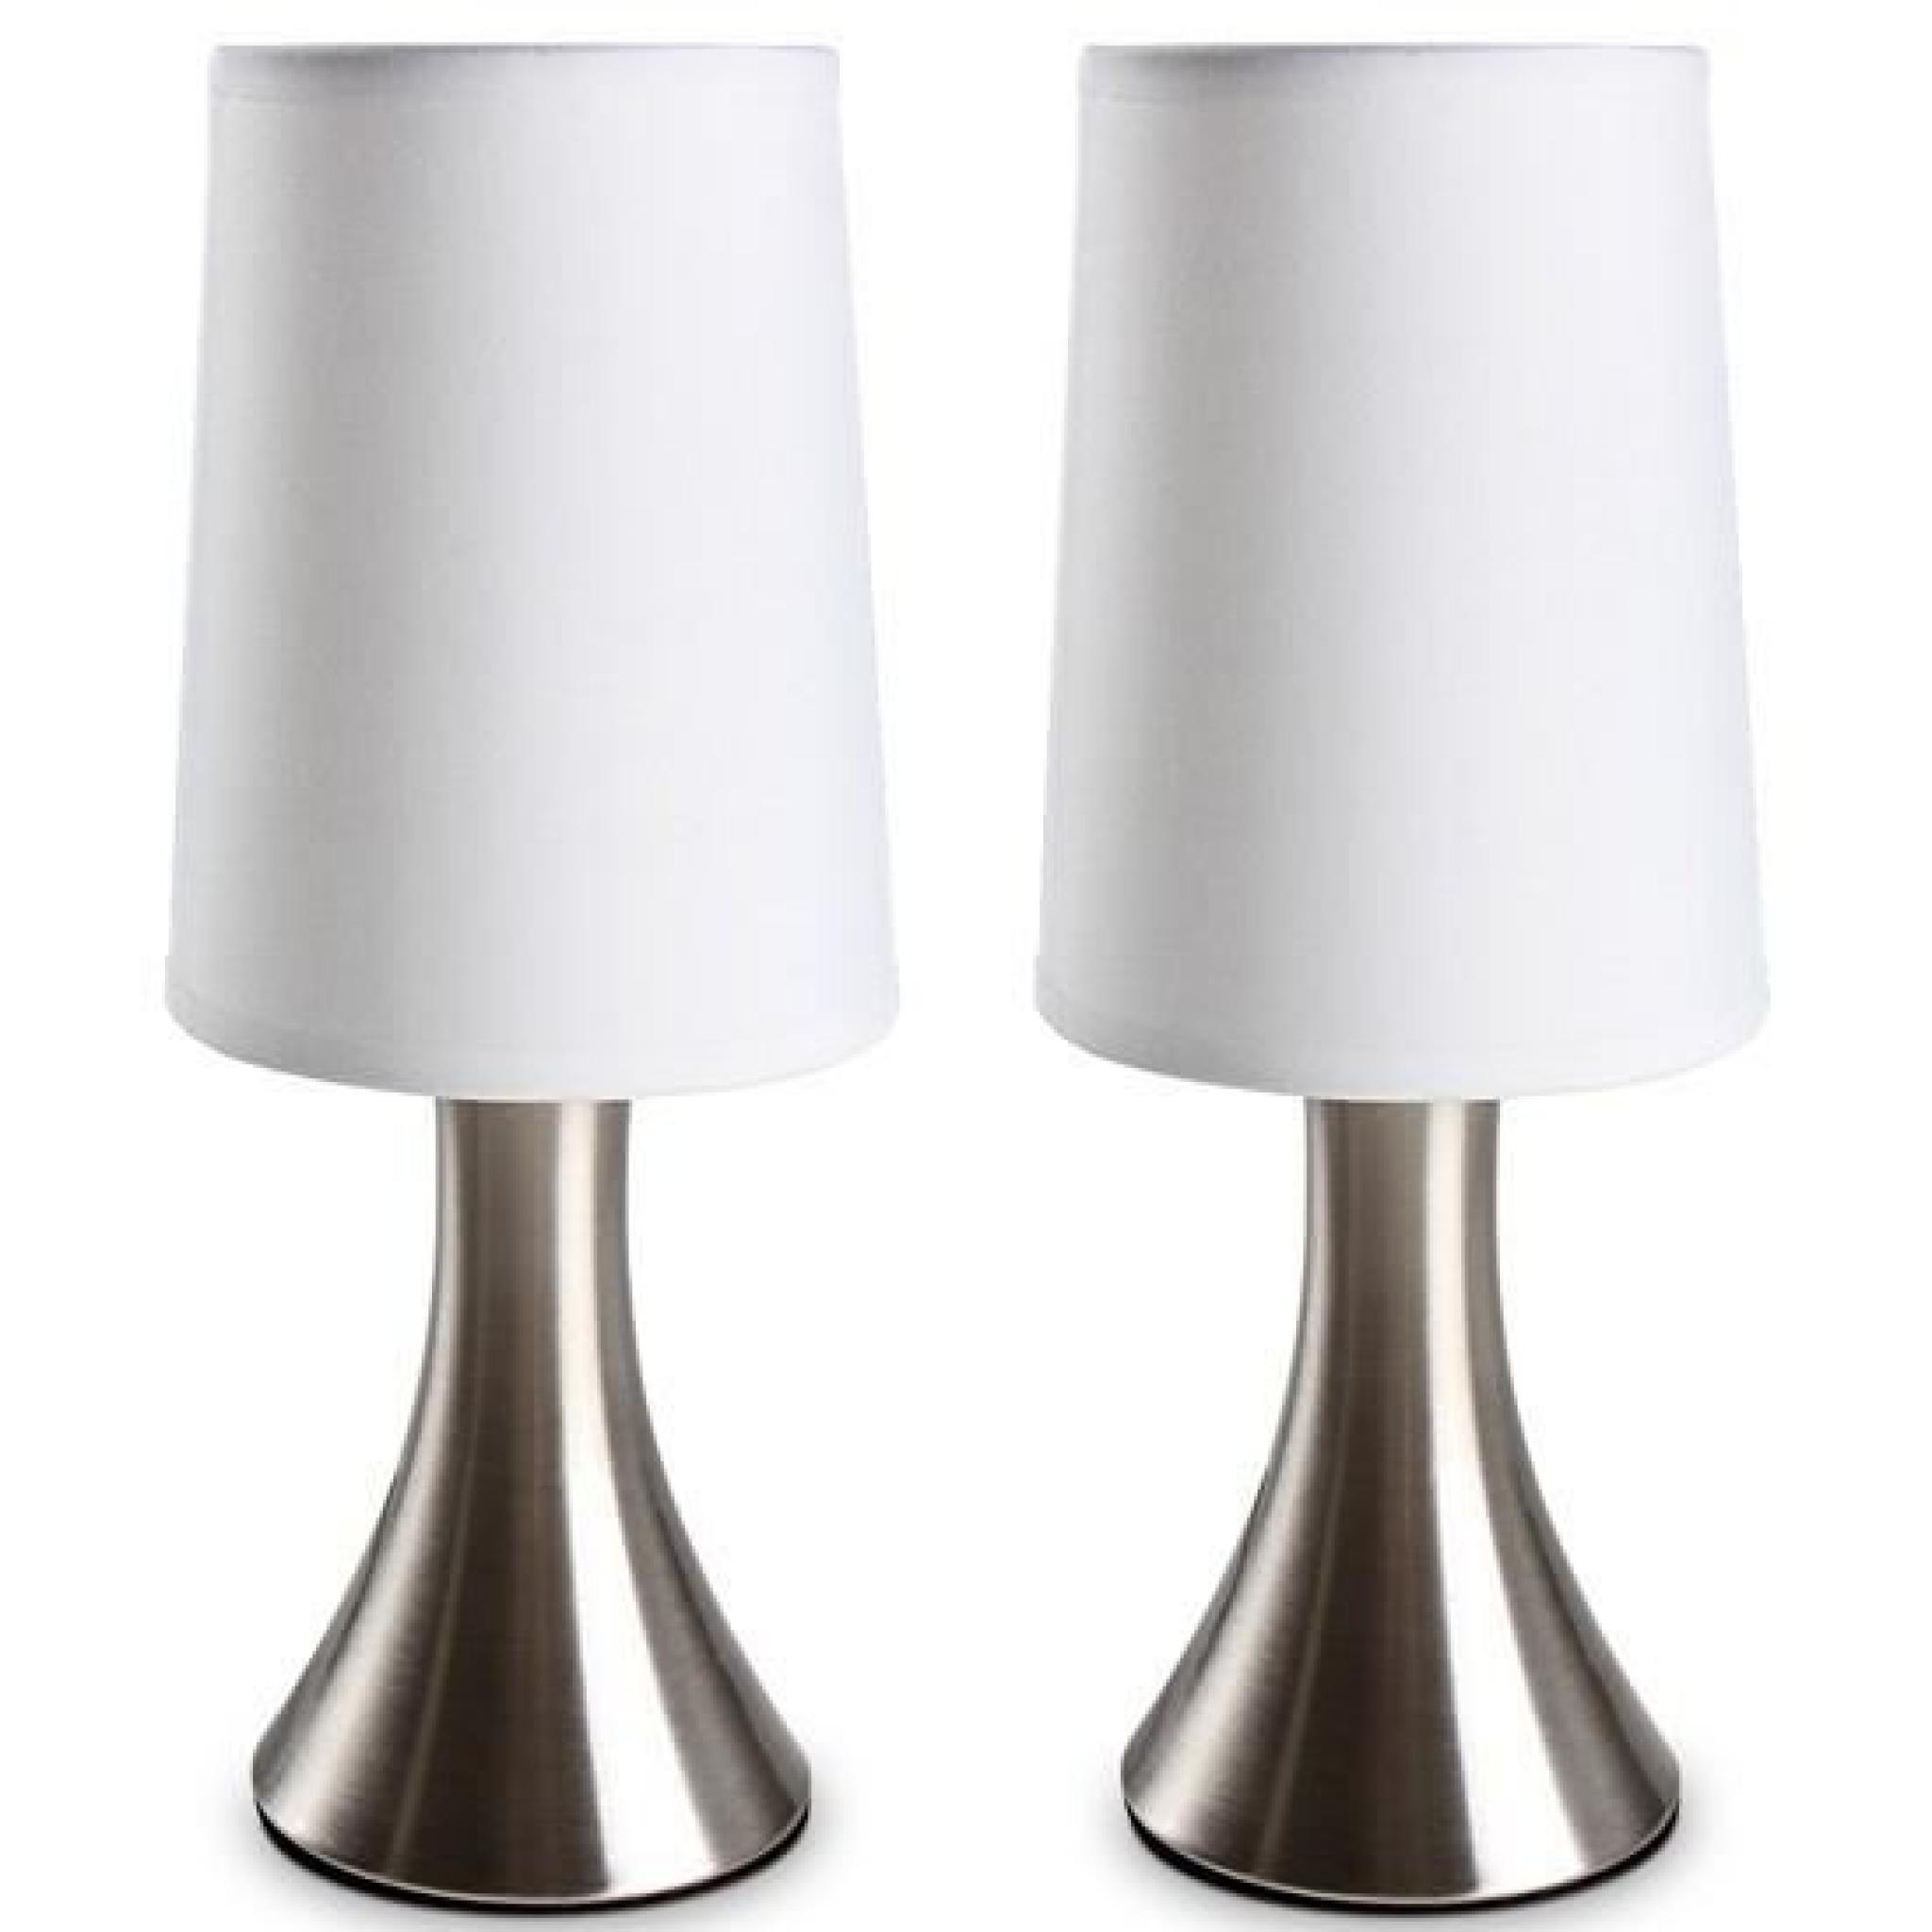 Lampe de table élégante avec trois niveaux de luminosité.